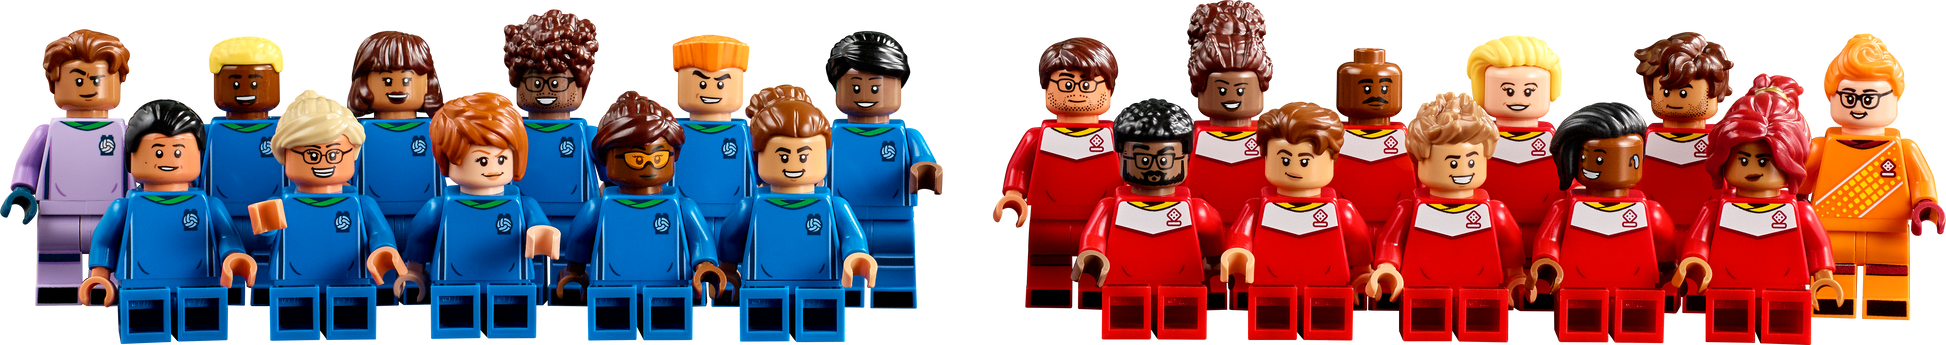 LEGO® set 21337